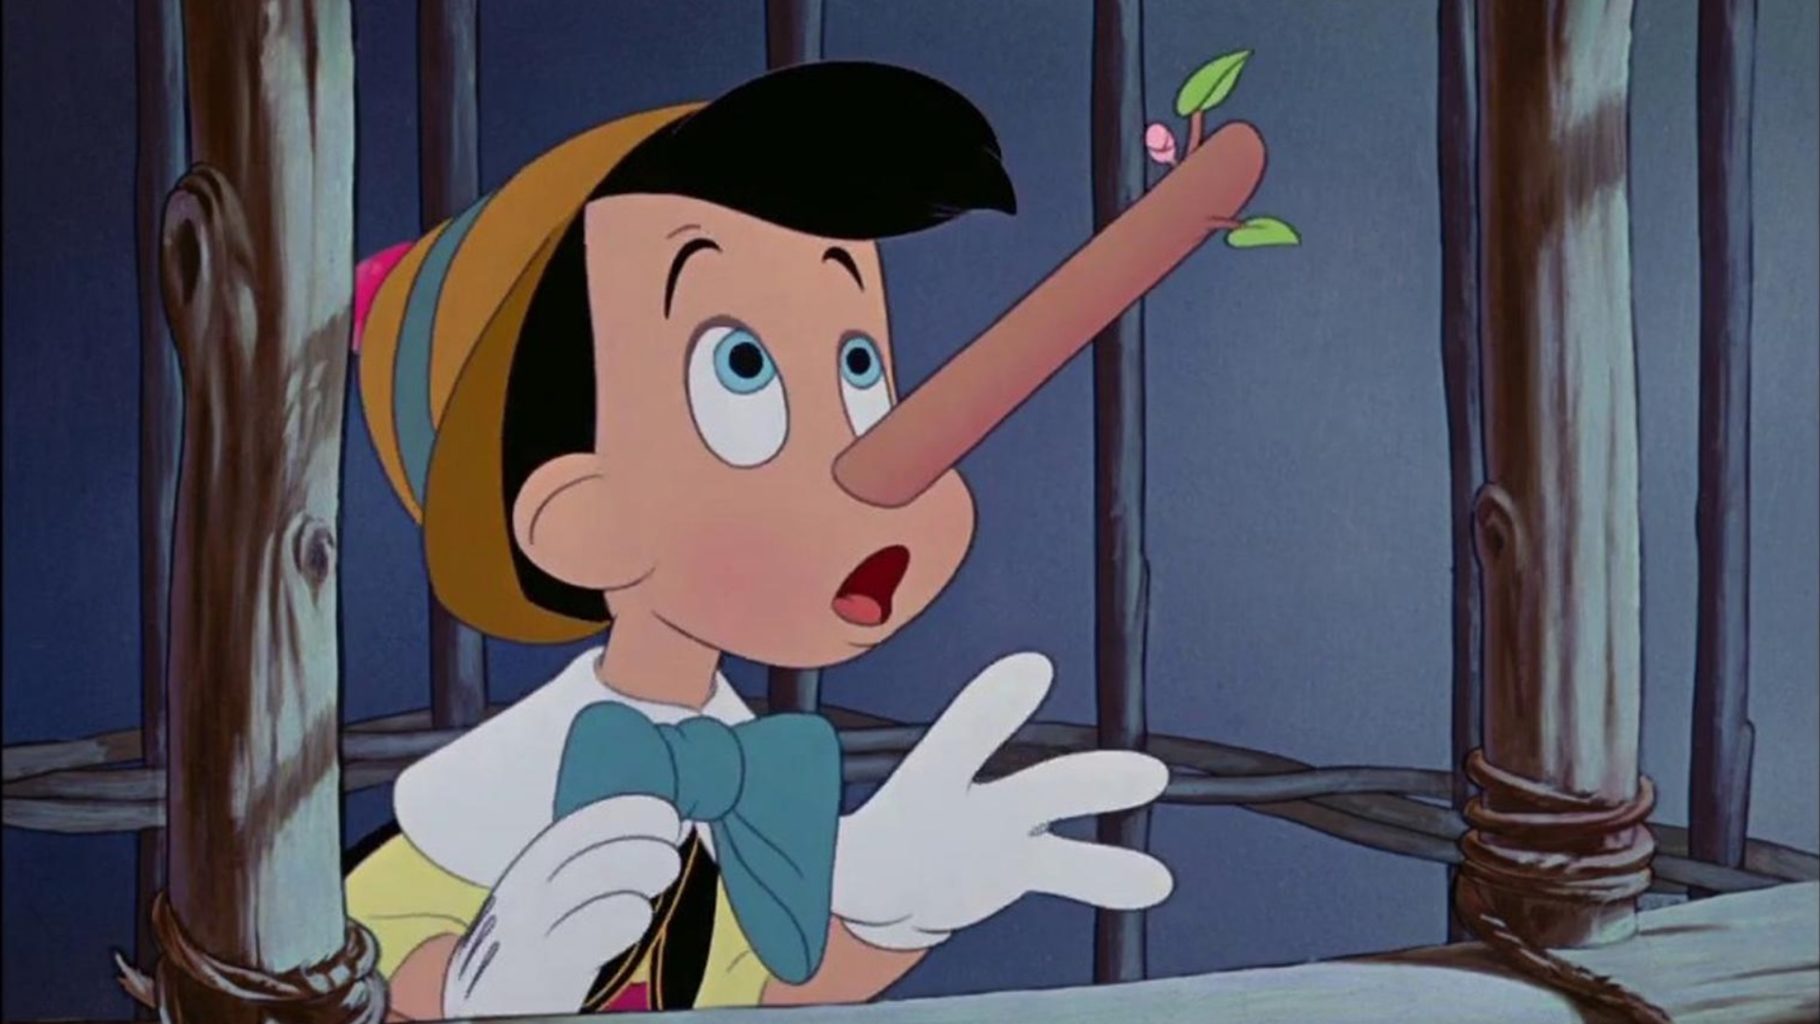 Pinocchio a le nez qui s'allonge